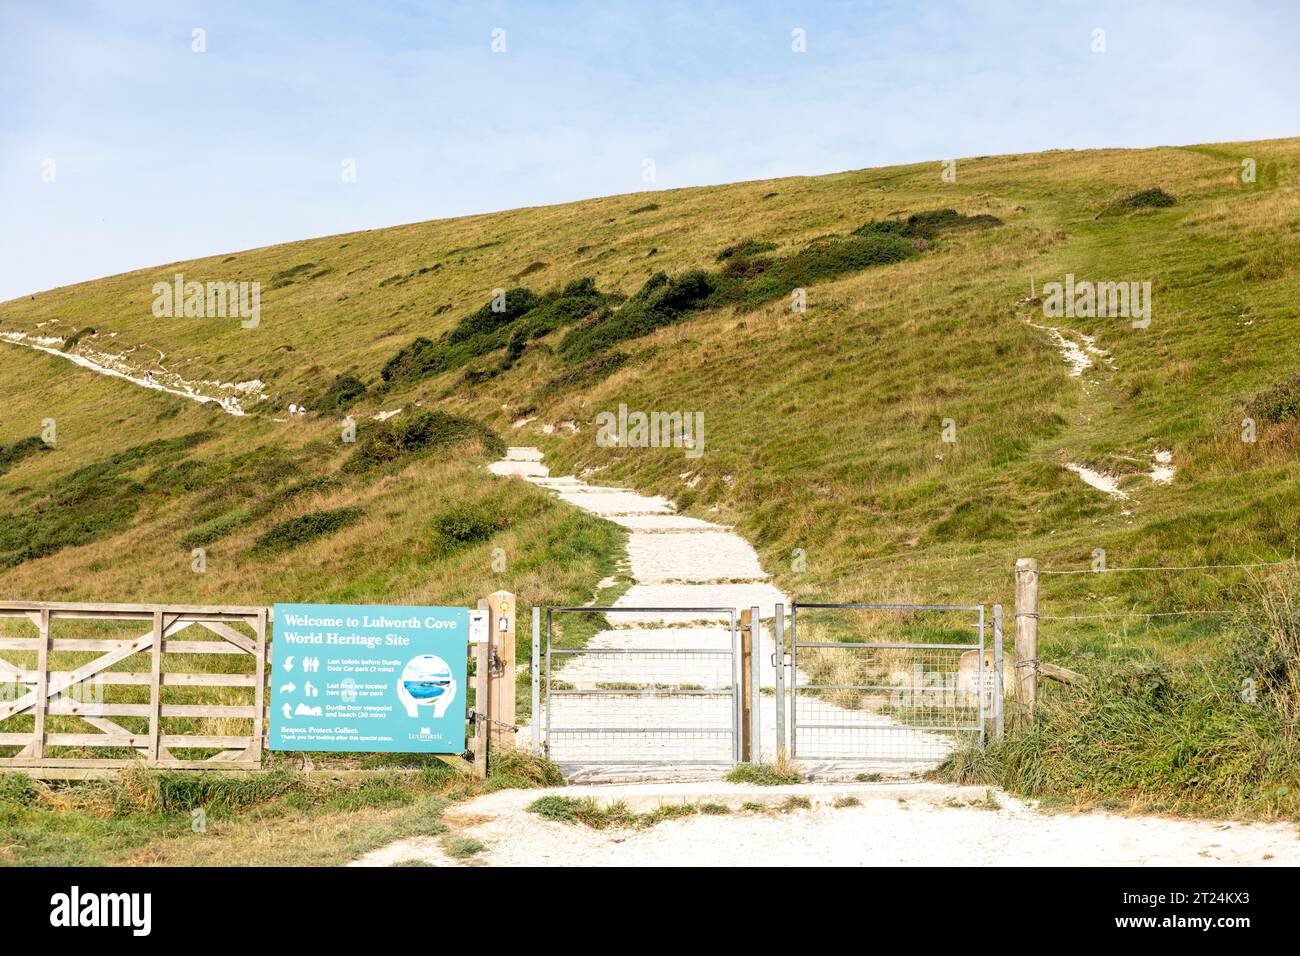 Lulworth Cove Welterbestätte Willkommensschild und Pfad zum Durdle Door Naturkalksteinbogen, Dorset, England, UK, September 2023 Stockfoto